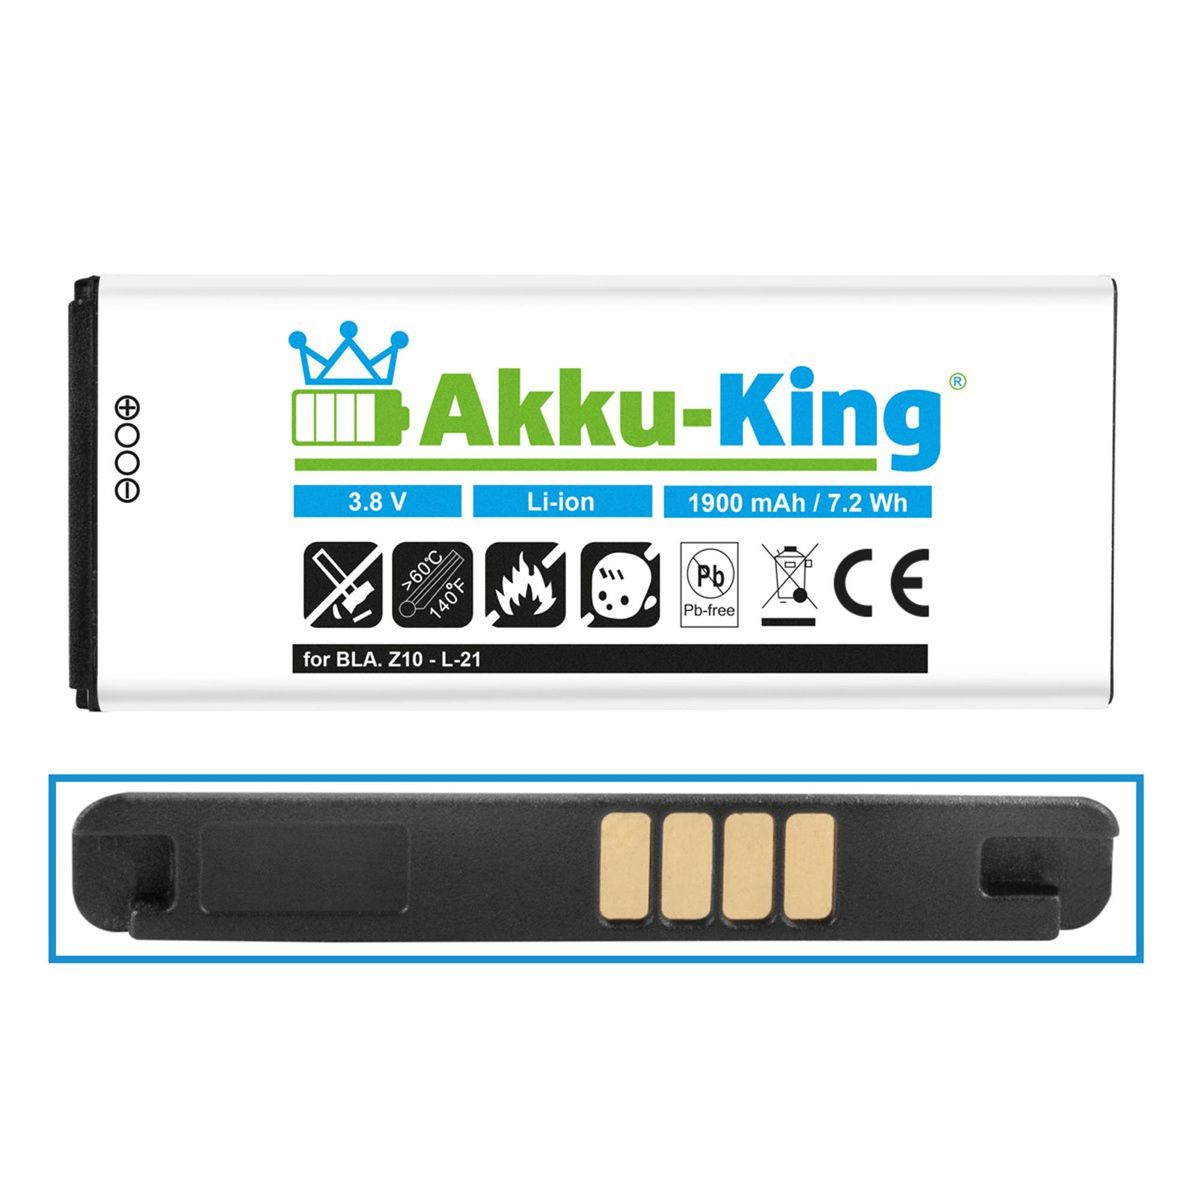 Akku Handy-Akku, AKKU-KING BlackBerry Volt, 1900mAh L-S1 für Li-Ion 3.8